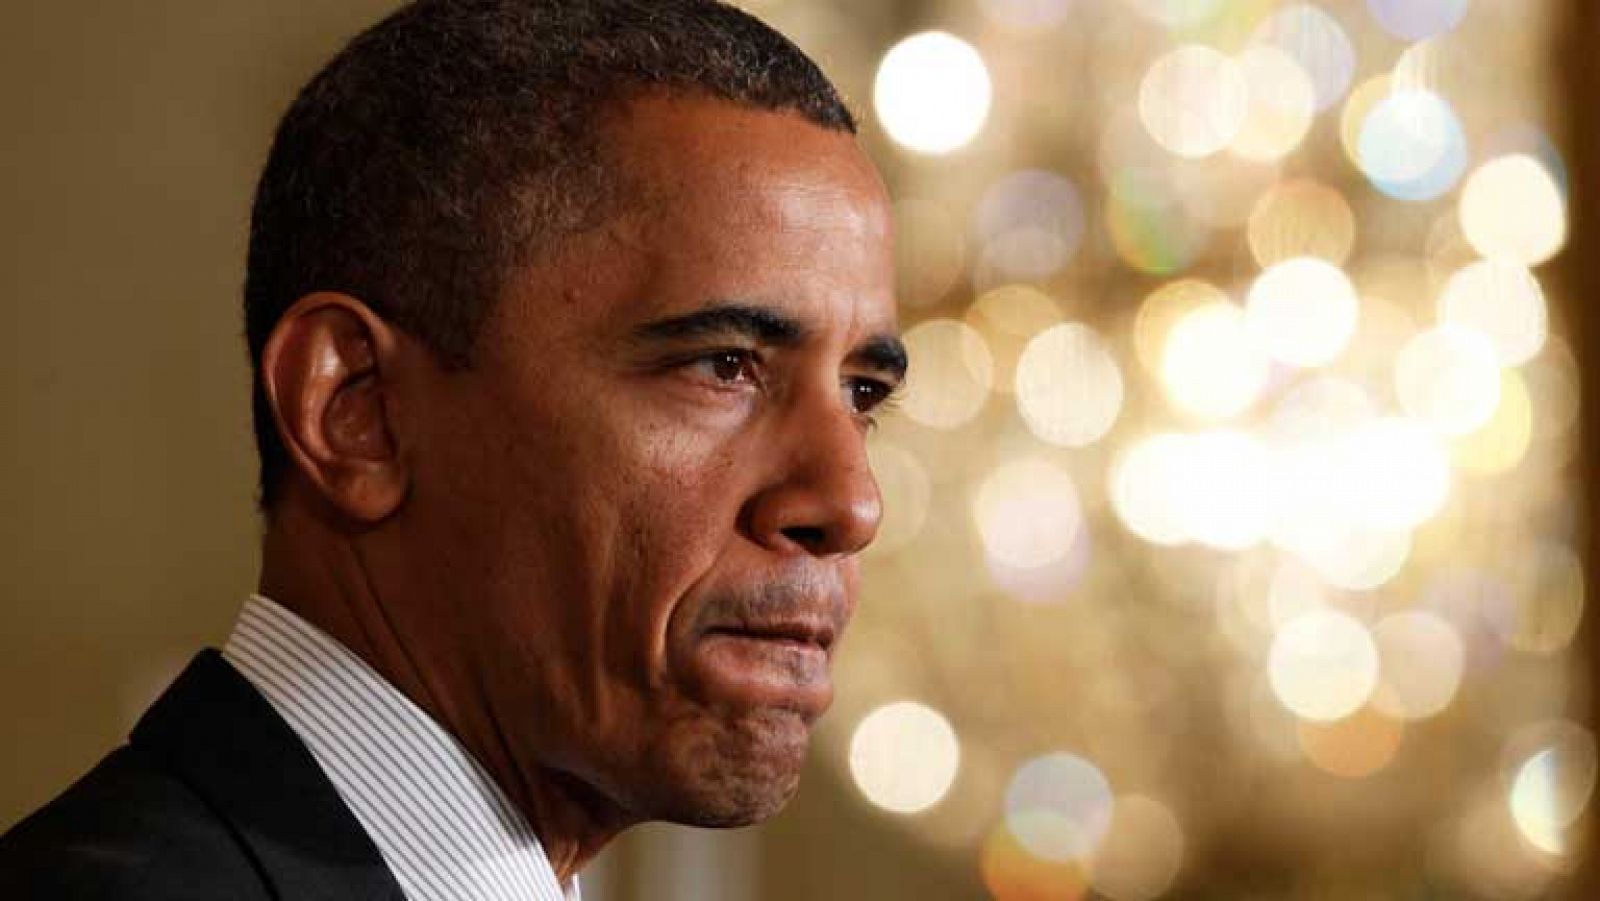 Obama acaba de pronunciar su primer discurso tras la reelección y muestra su plan económico